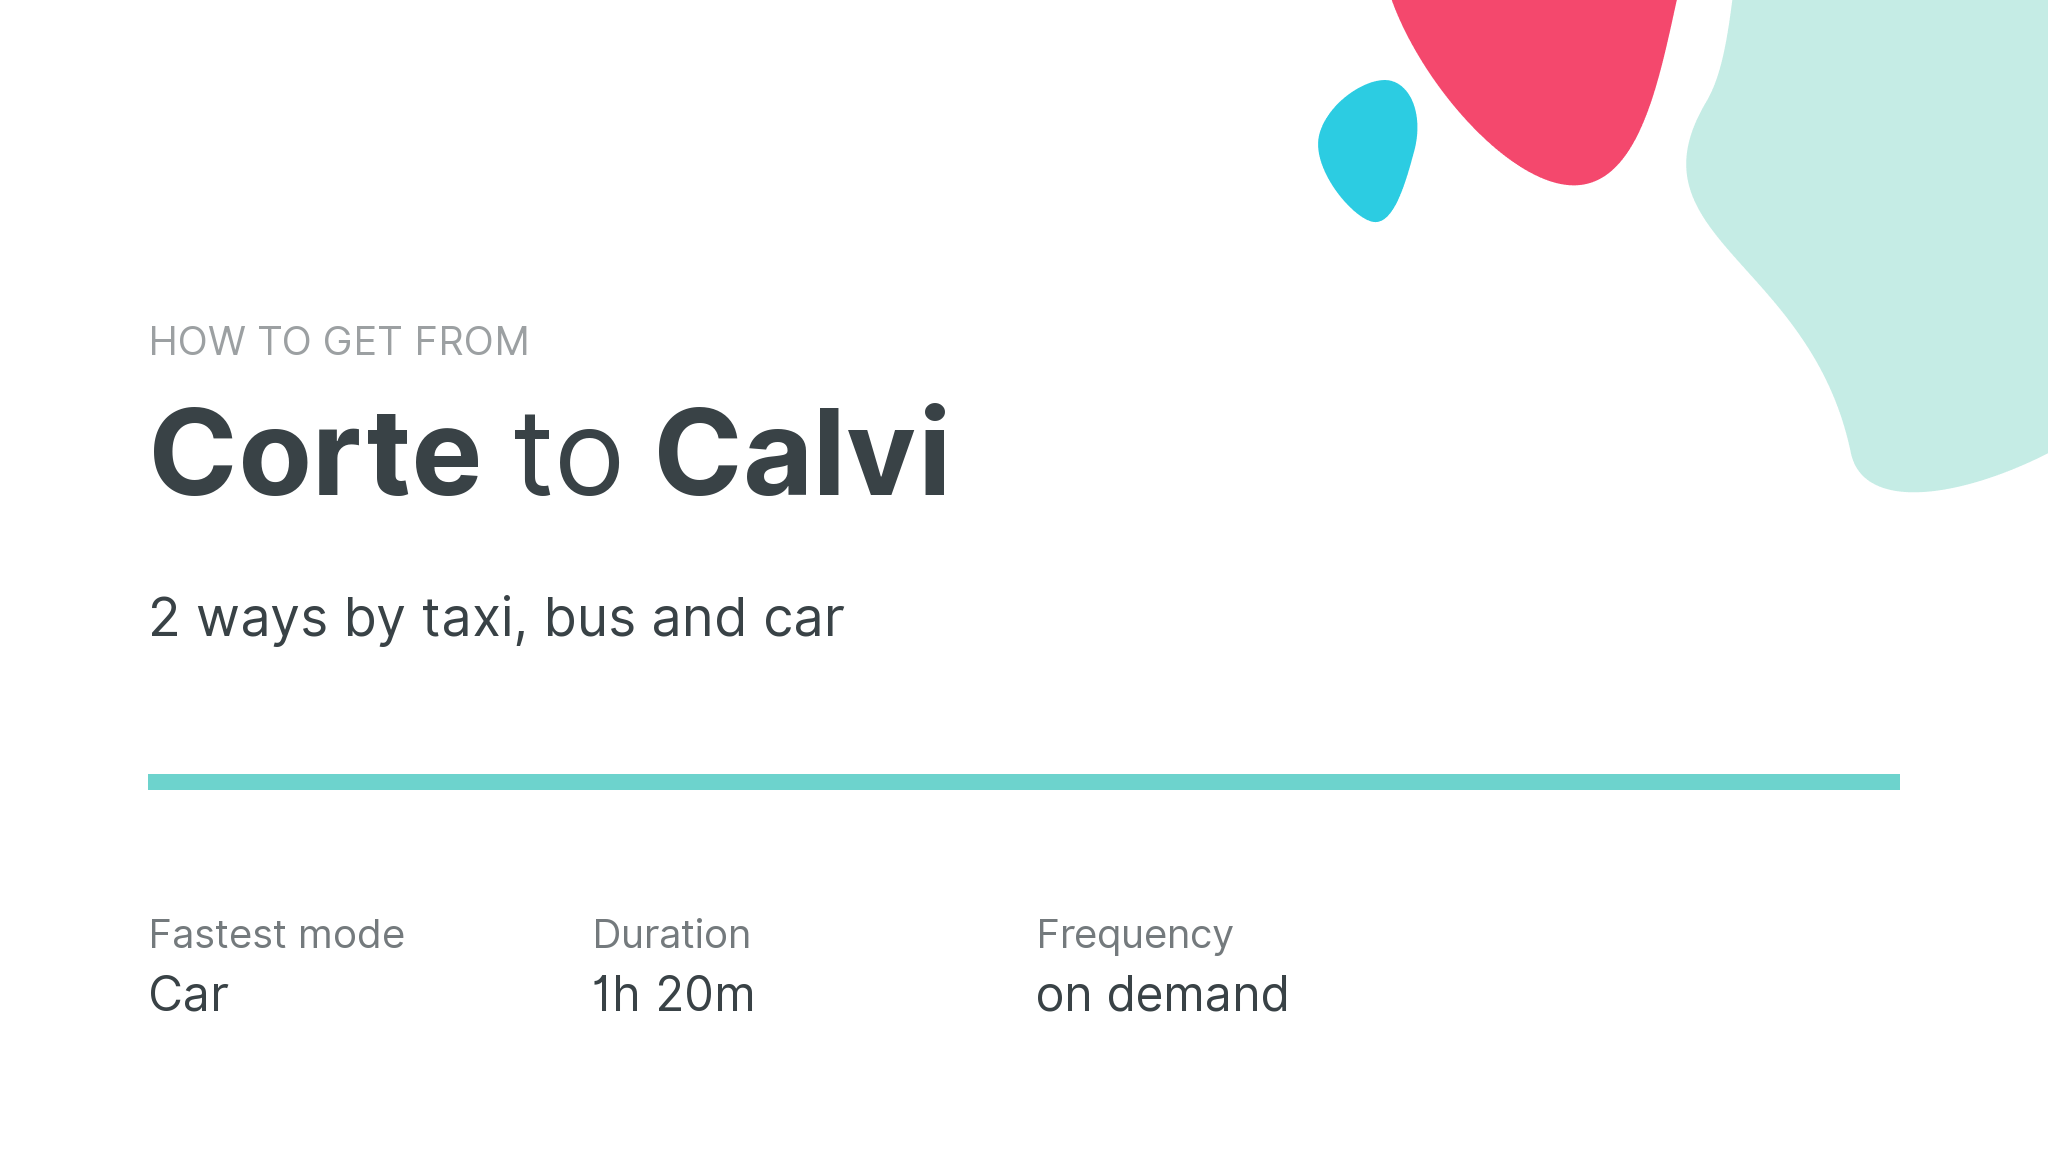 How do I get from Corte to Calvi